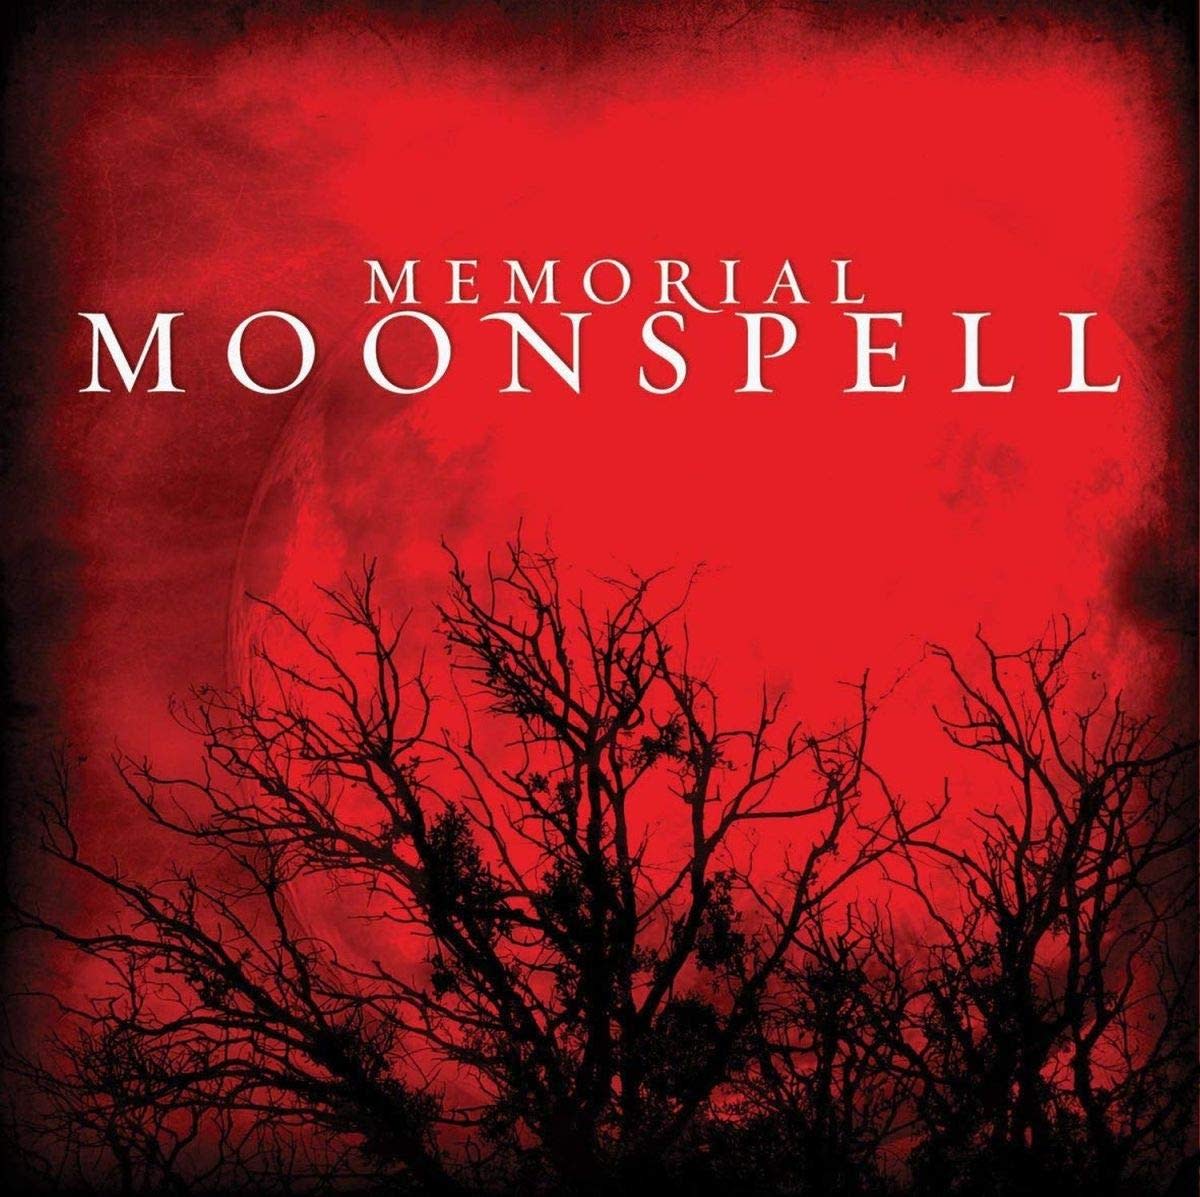 moonspell-memorial-album-review